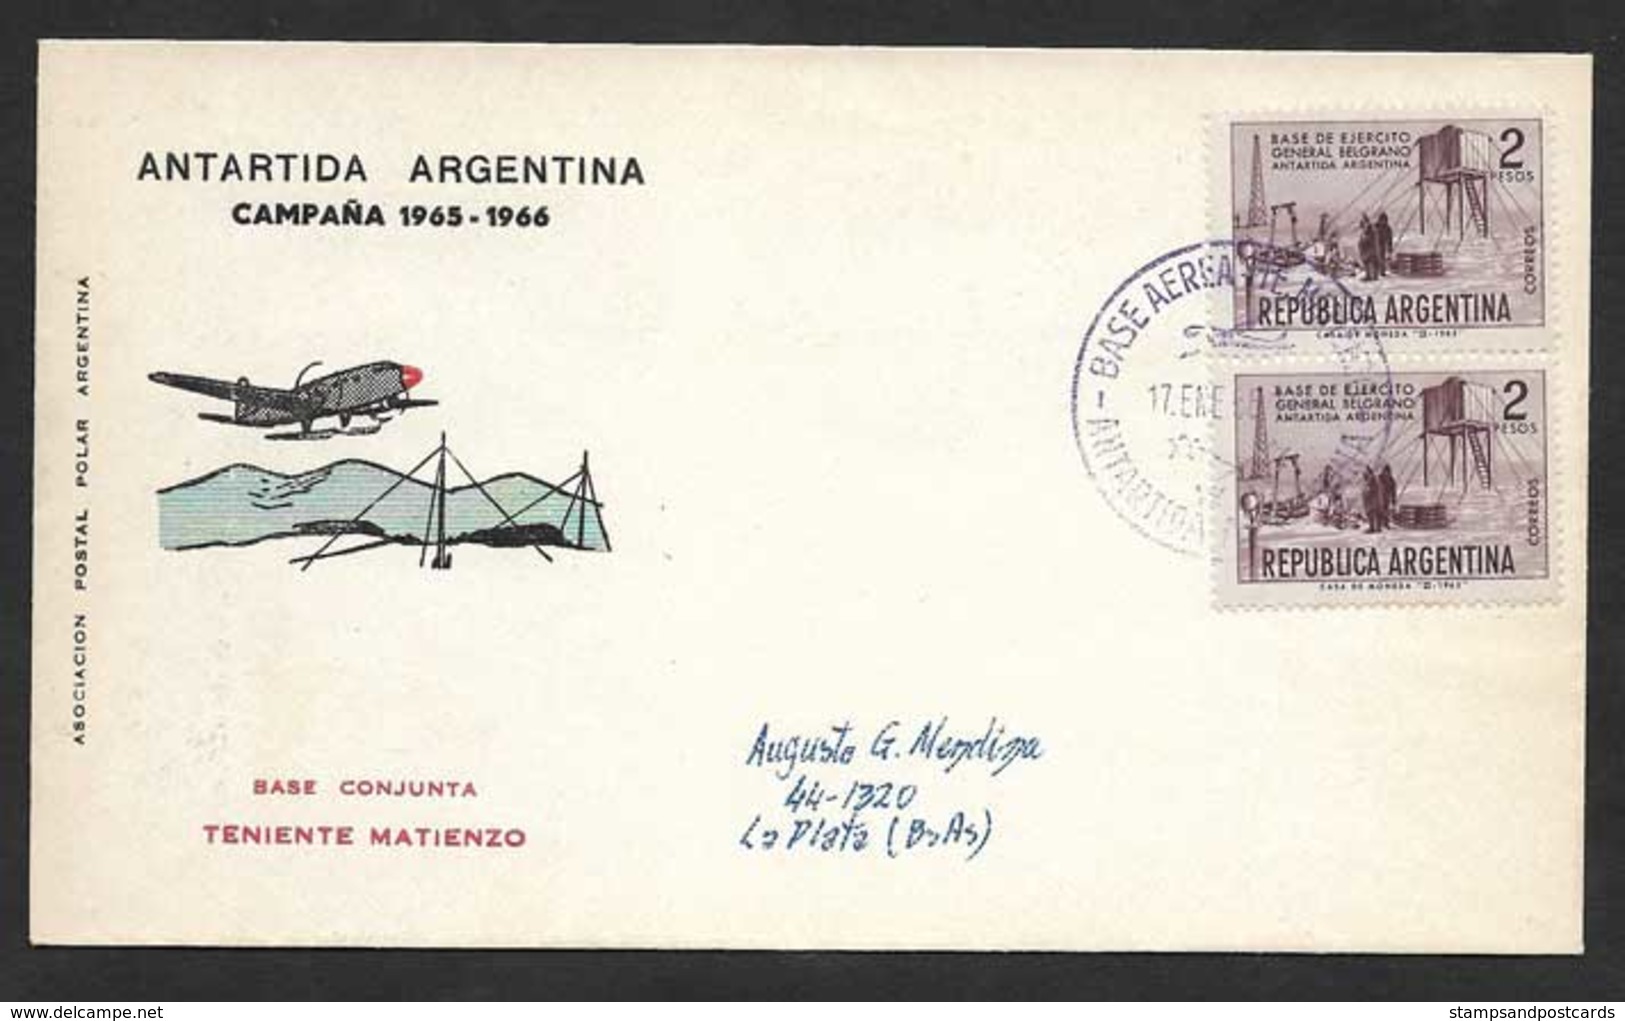 Argentine Base Aerienne Teniente Matienzo Antarctique 1966 Argentina Antartic Aerial Base - Polar Flights